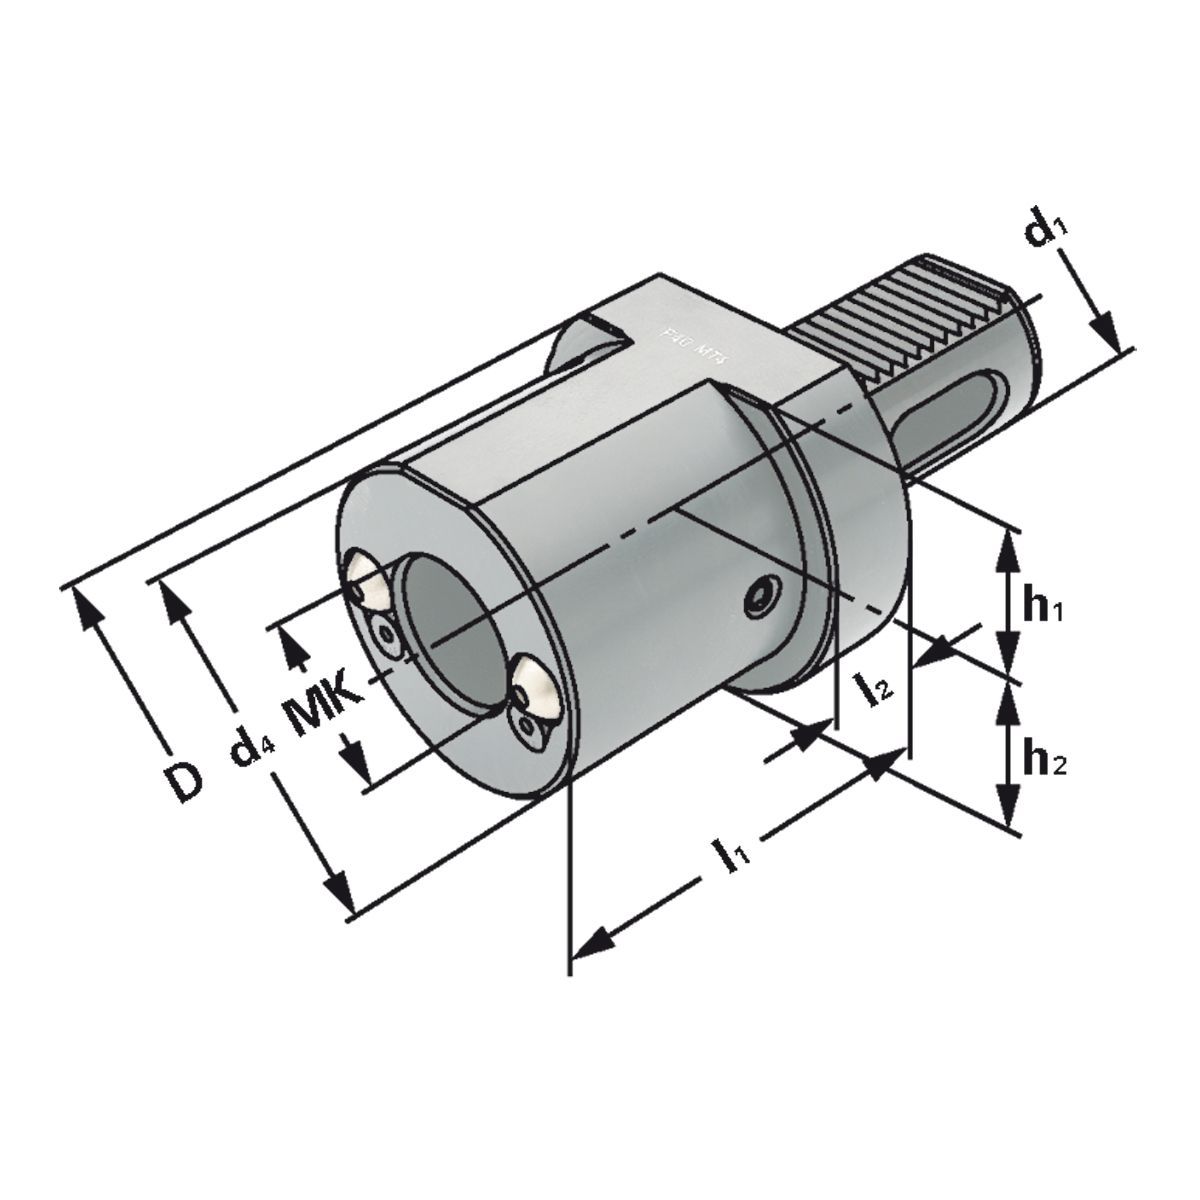 Bohrerhalter für MK-Werkzeuge F1-20xMK1 DIN 69880 (ISO 10889)